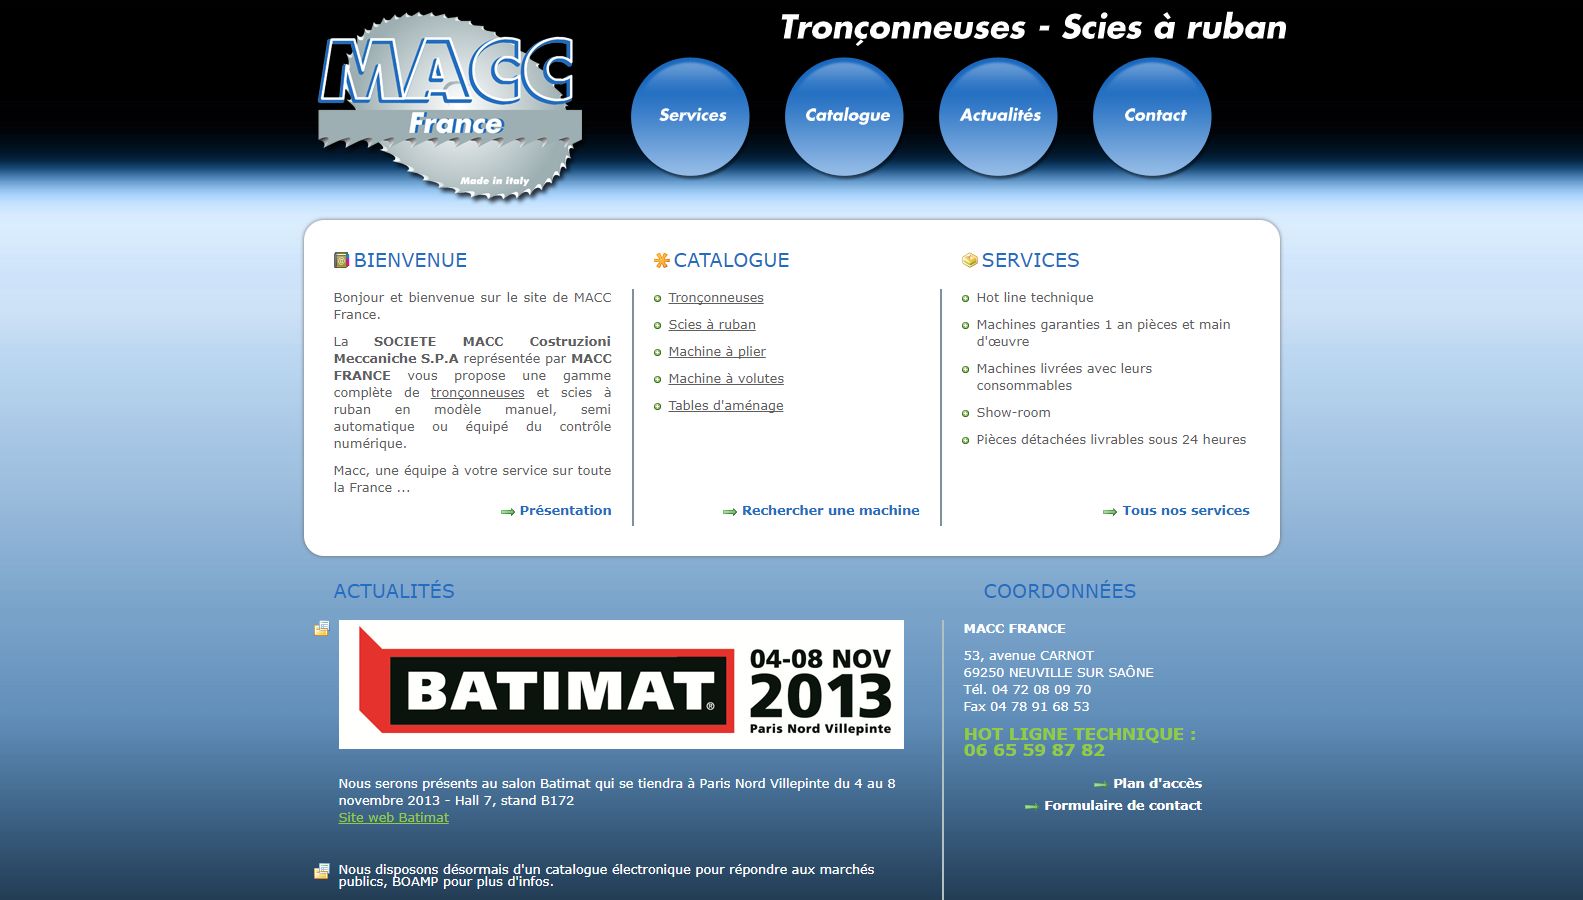 Réalisation RP2I (Romaric Pibolleau): MACC France - Site web